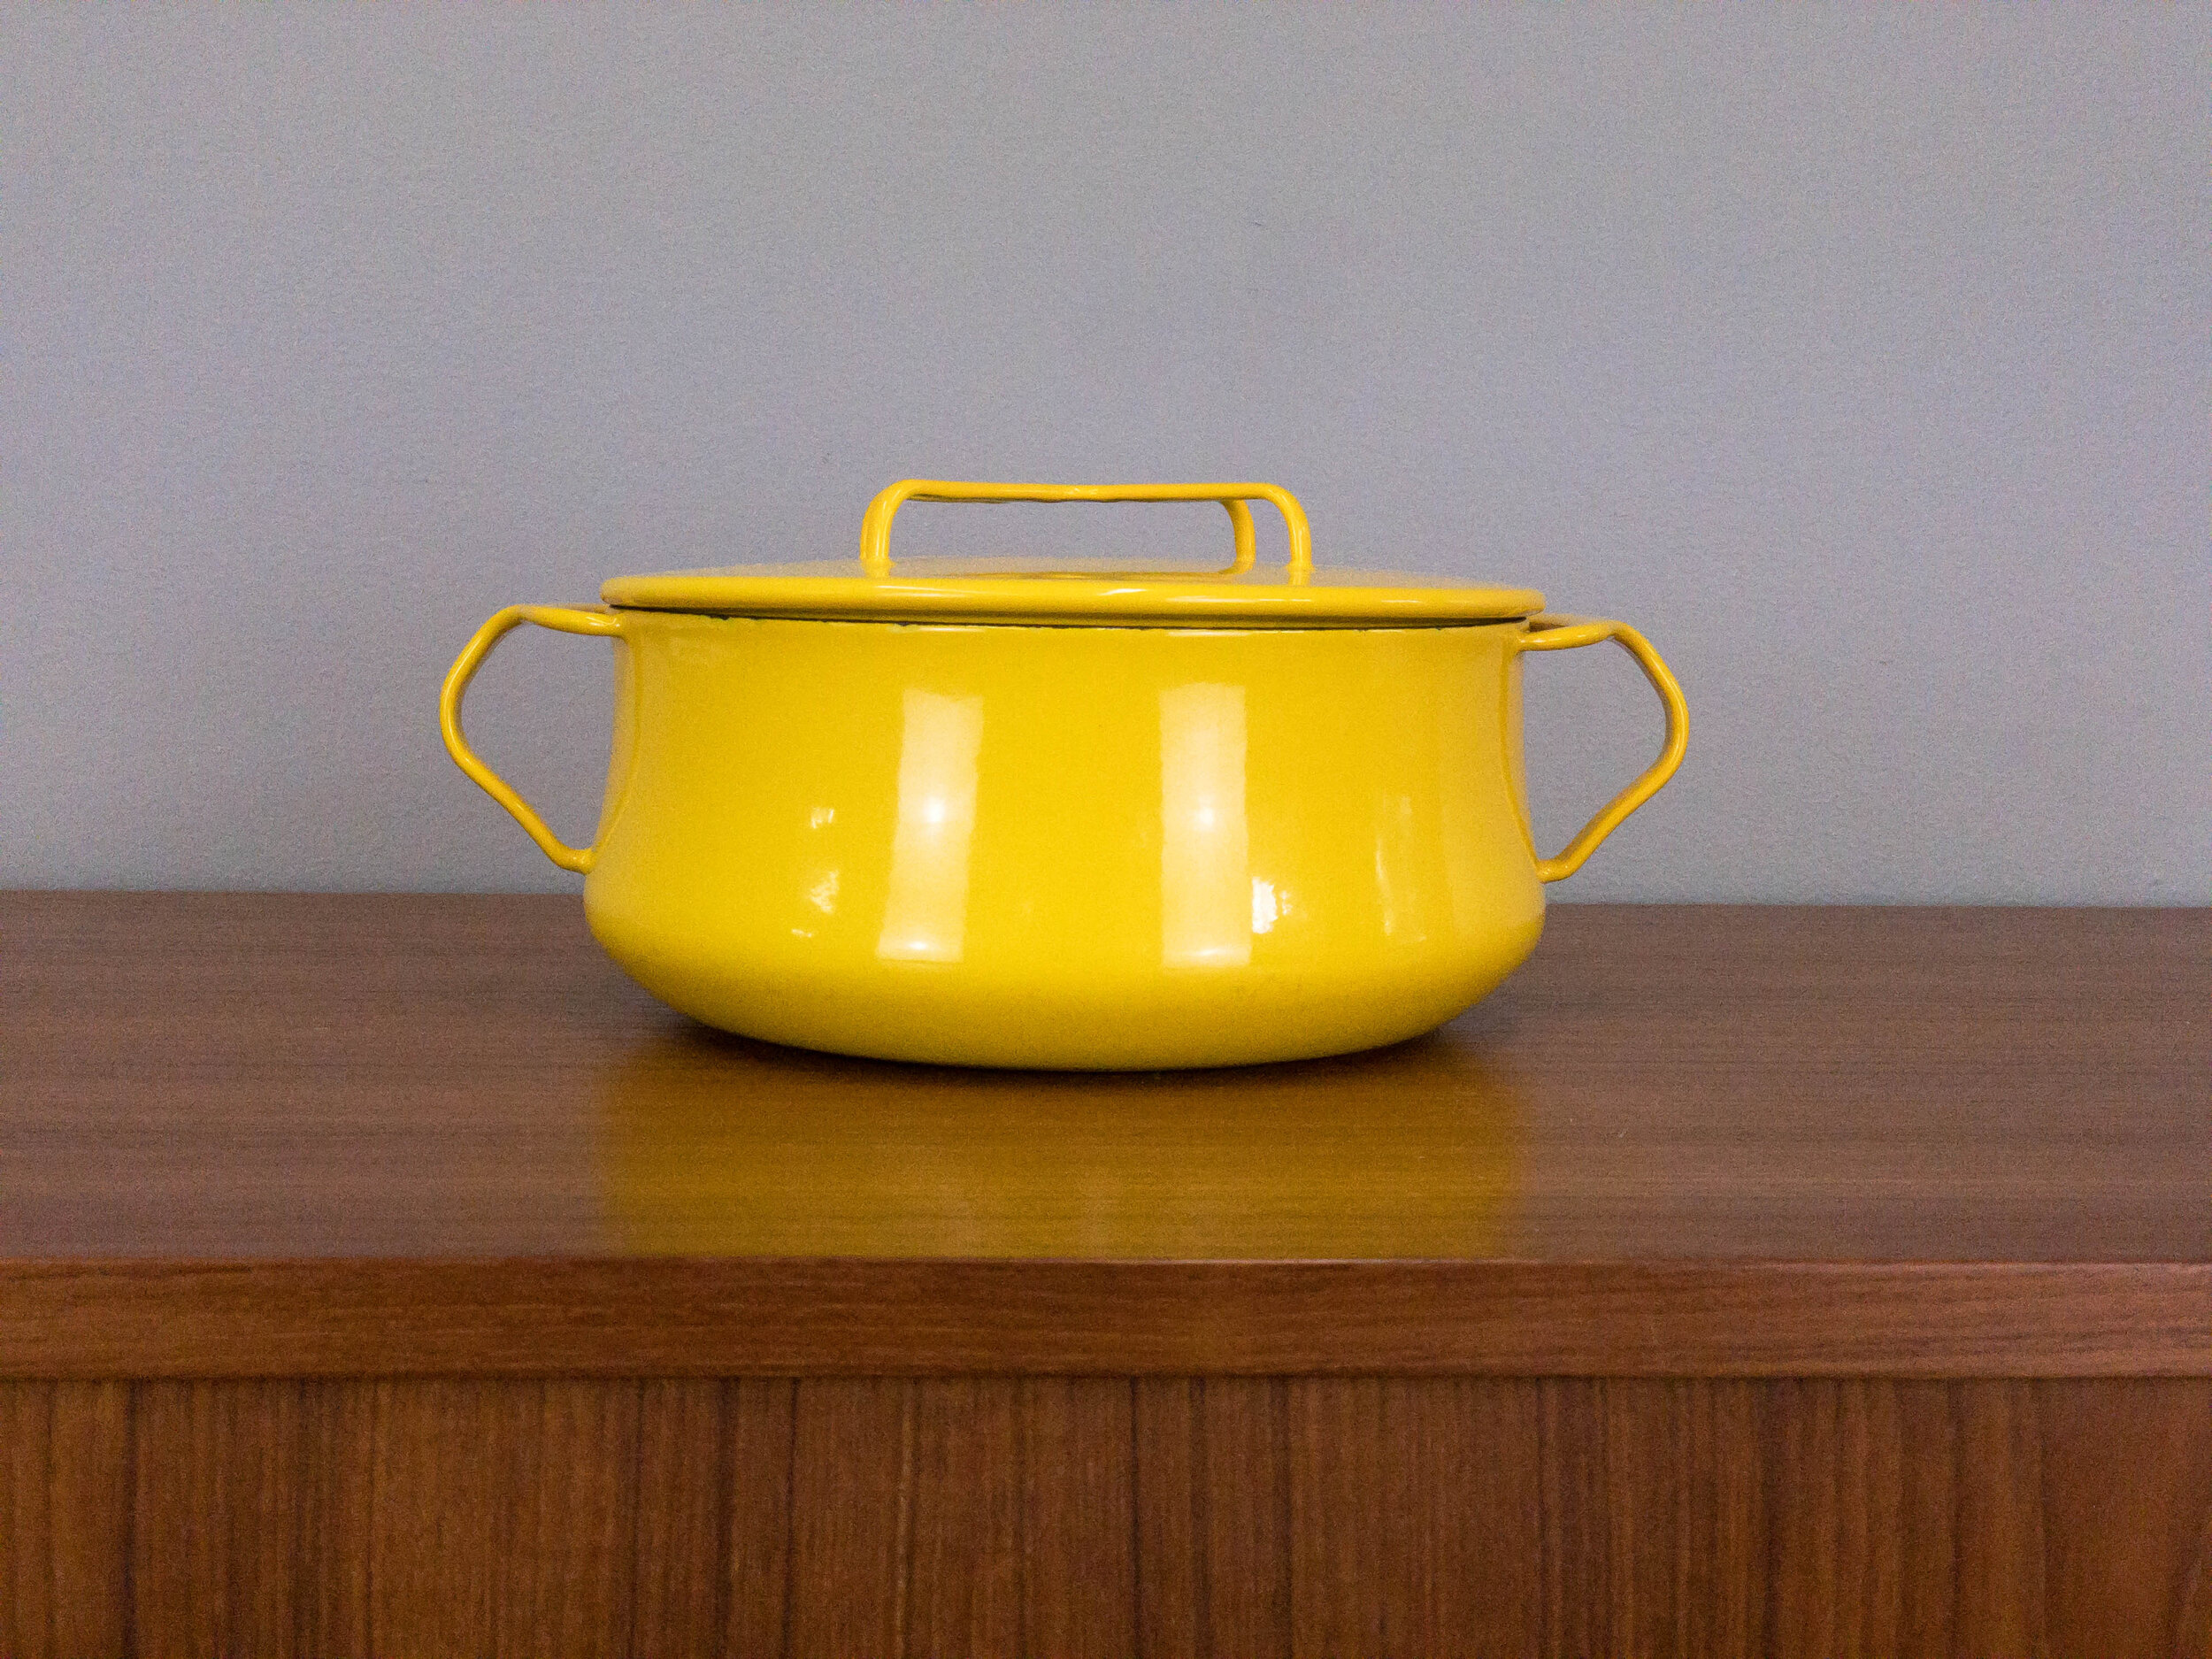 Vintage Dansk Kobenstyle Stock Pot - 8 Quart Sun Gold Yellow